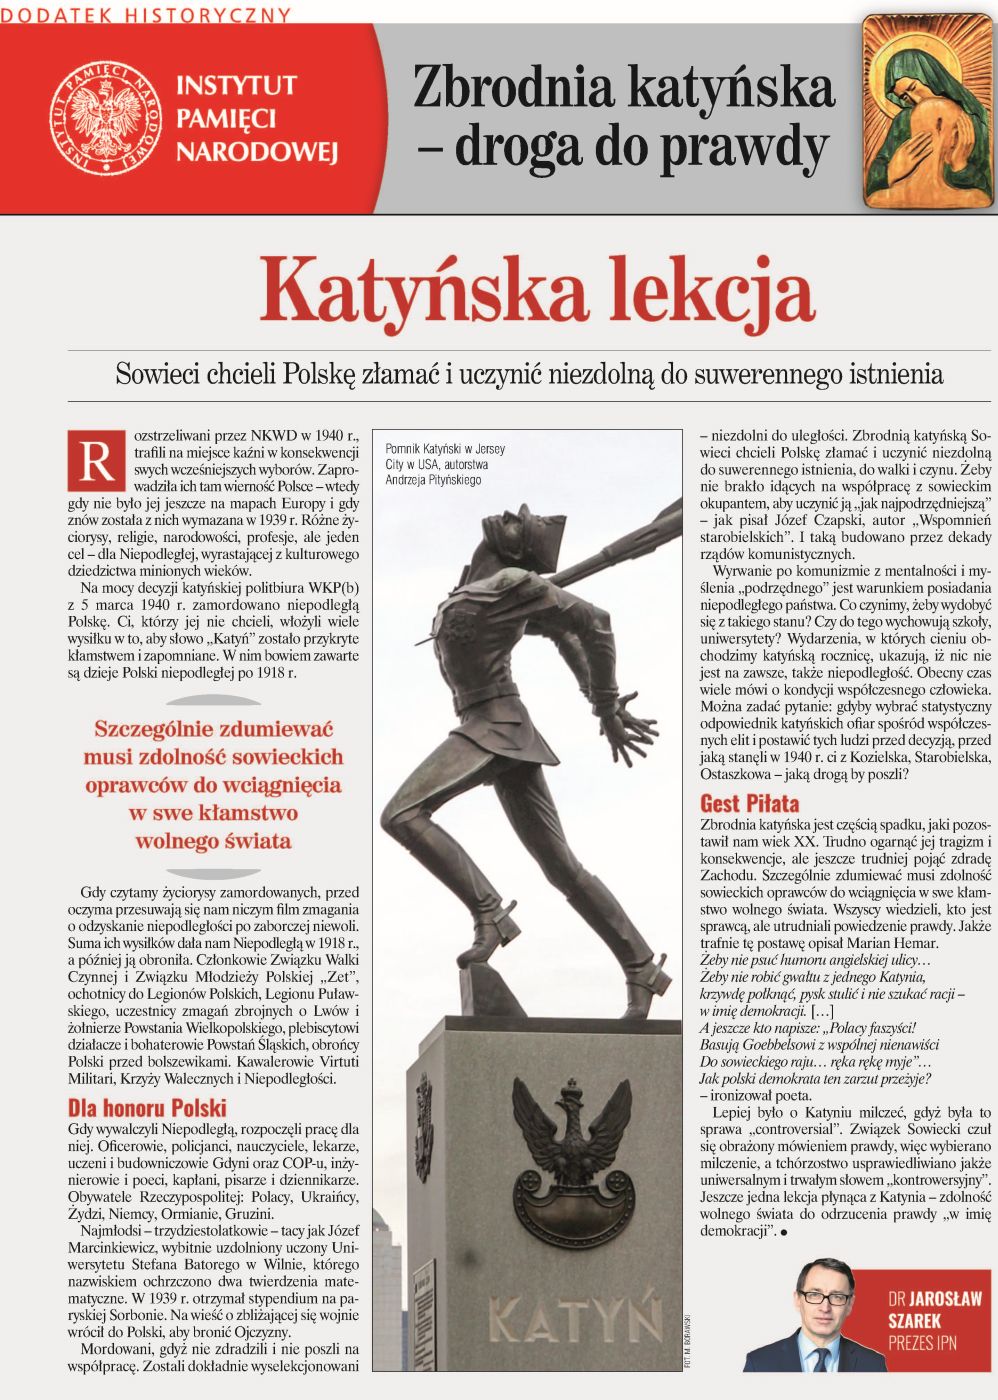 Zbrodnia katyńska – droga do prawdy – dodatek historyczny do „Naszego Dziennika” z 8 kwietnia 2020 - okładka